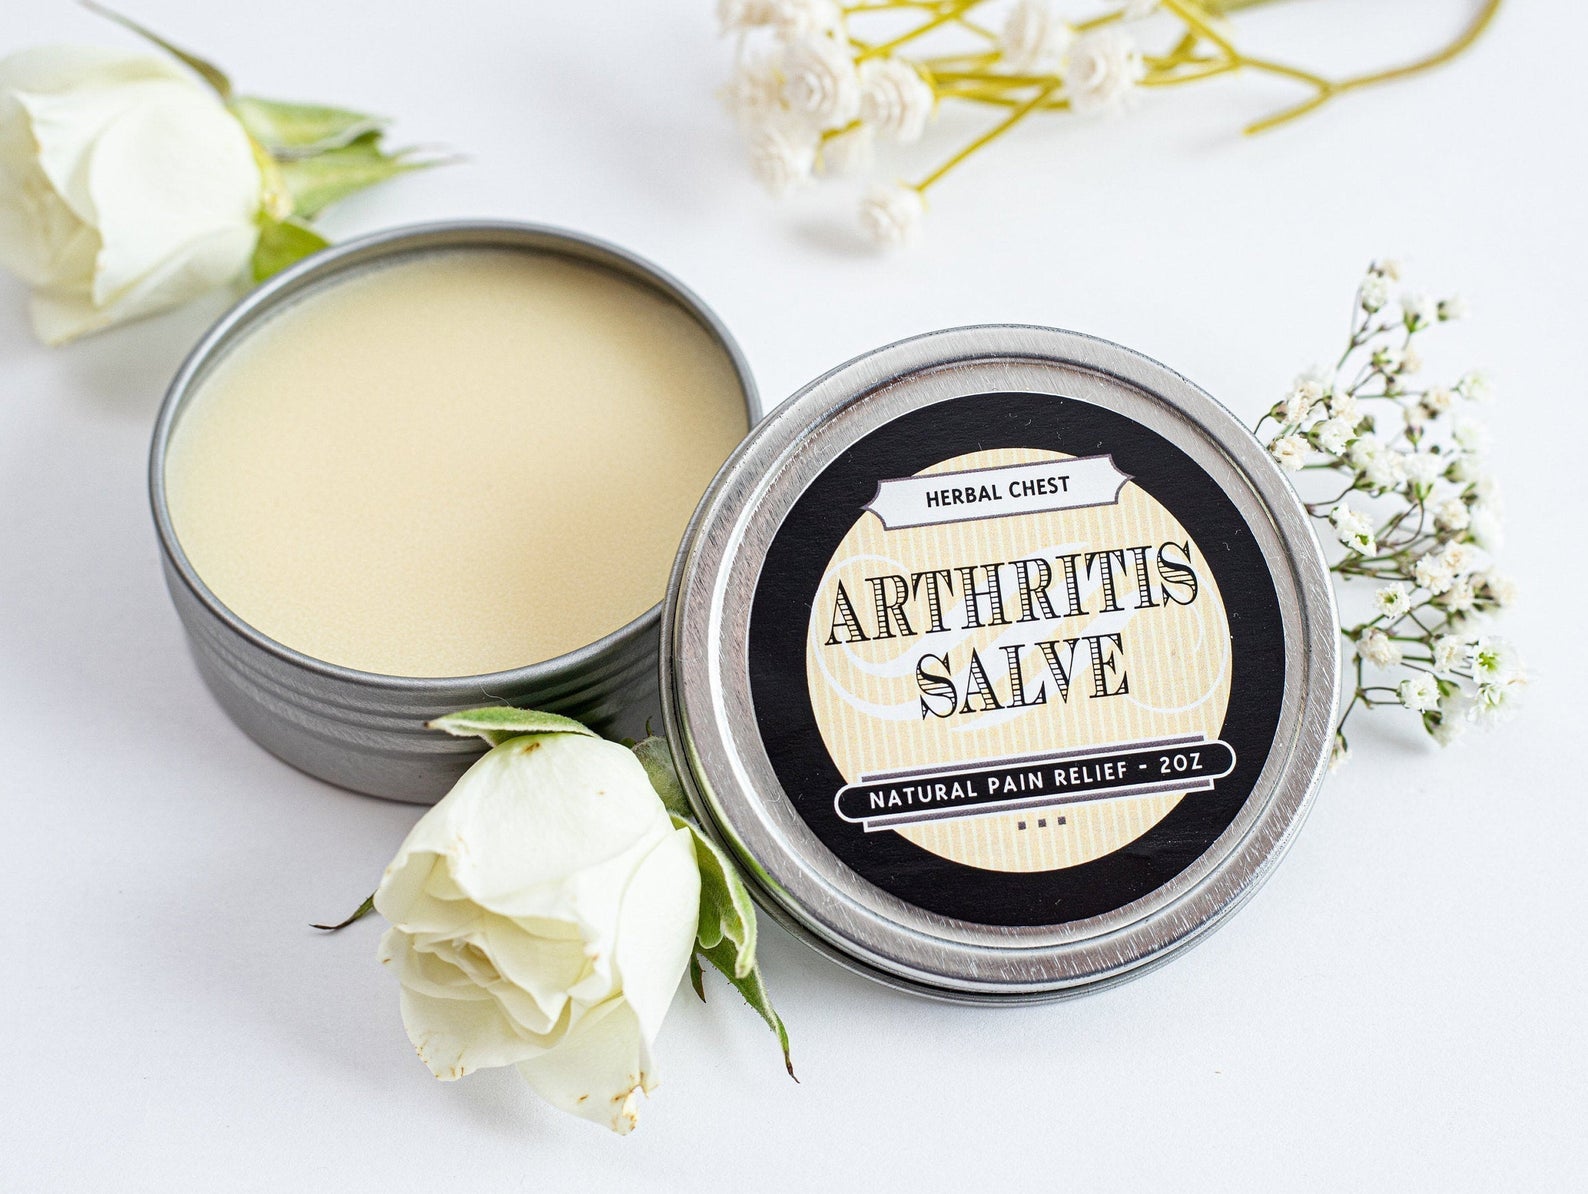 A tin of arthritis salve as a white balm 